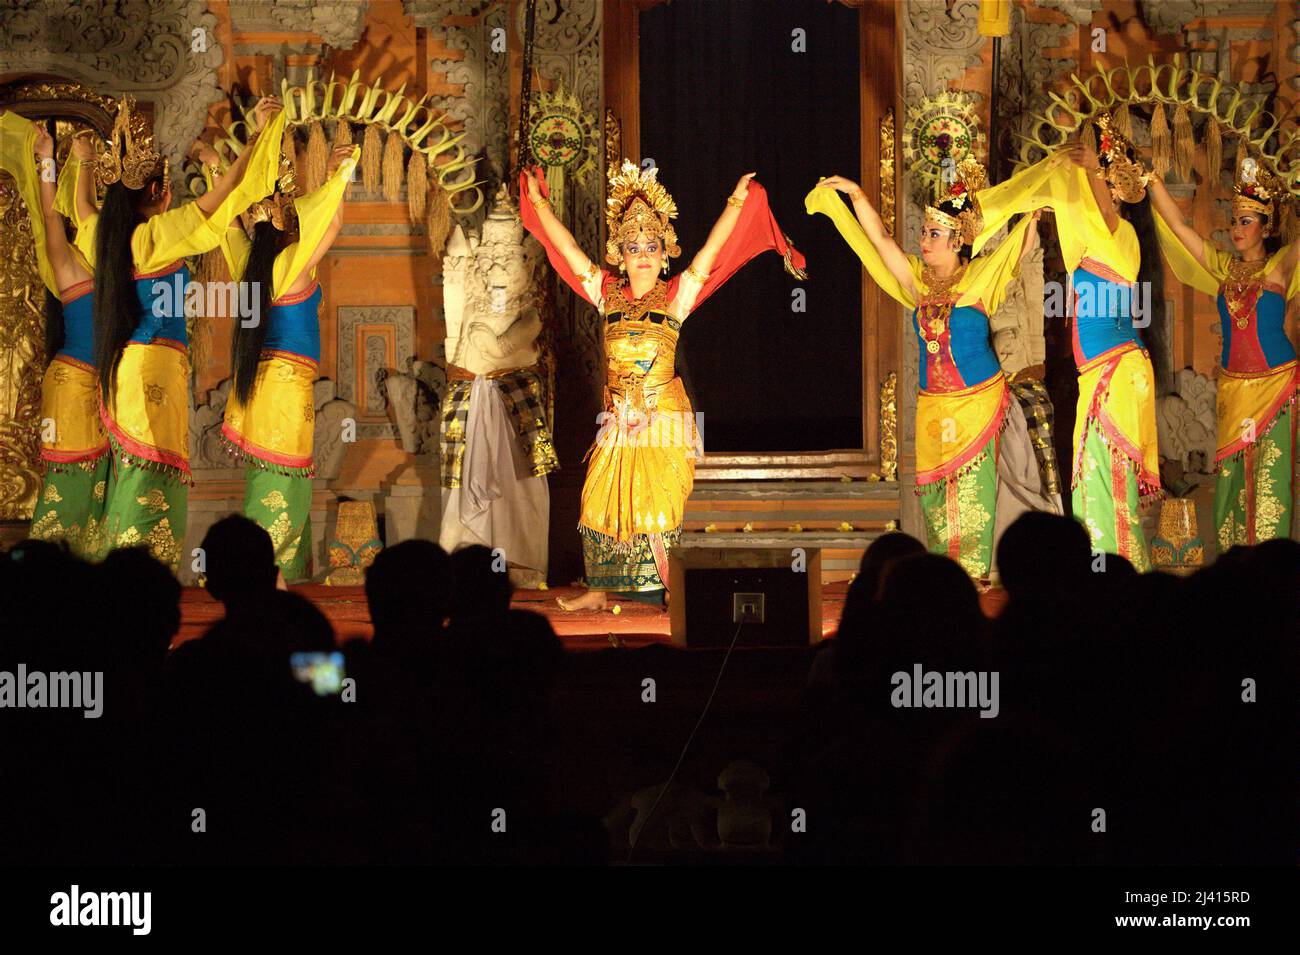 Darsteller während der traditionellen balinesischen Legong- und Barong-Tanzshow im Königlichen Palast in Ubud, Bali, Indonesien. In der Regel dauert die Legong (auch mit Barong-Maskentänzerin) etwa 1,5 Stunden und ist eine der besten Shows in Ubud, die während der Hauptsaison immer mit Zuschauern gefüllt ist. Stockfoto